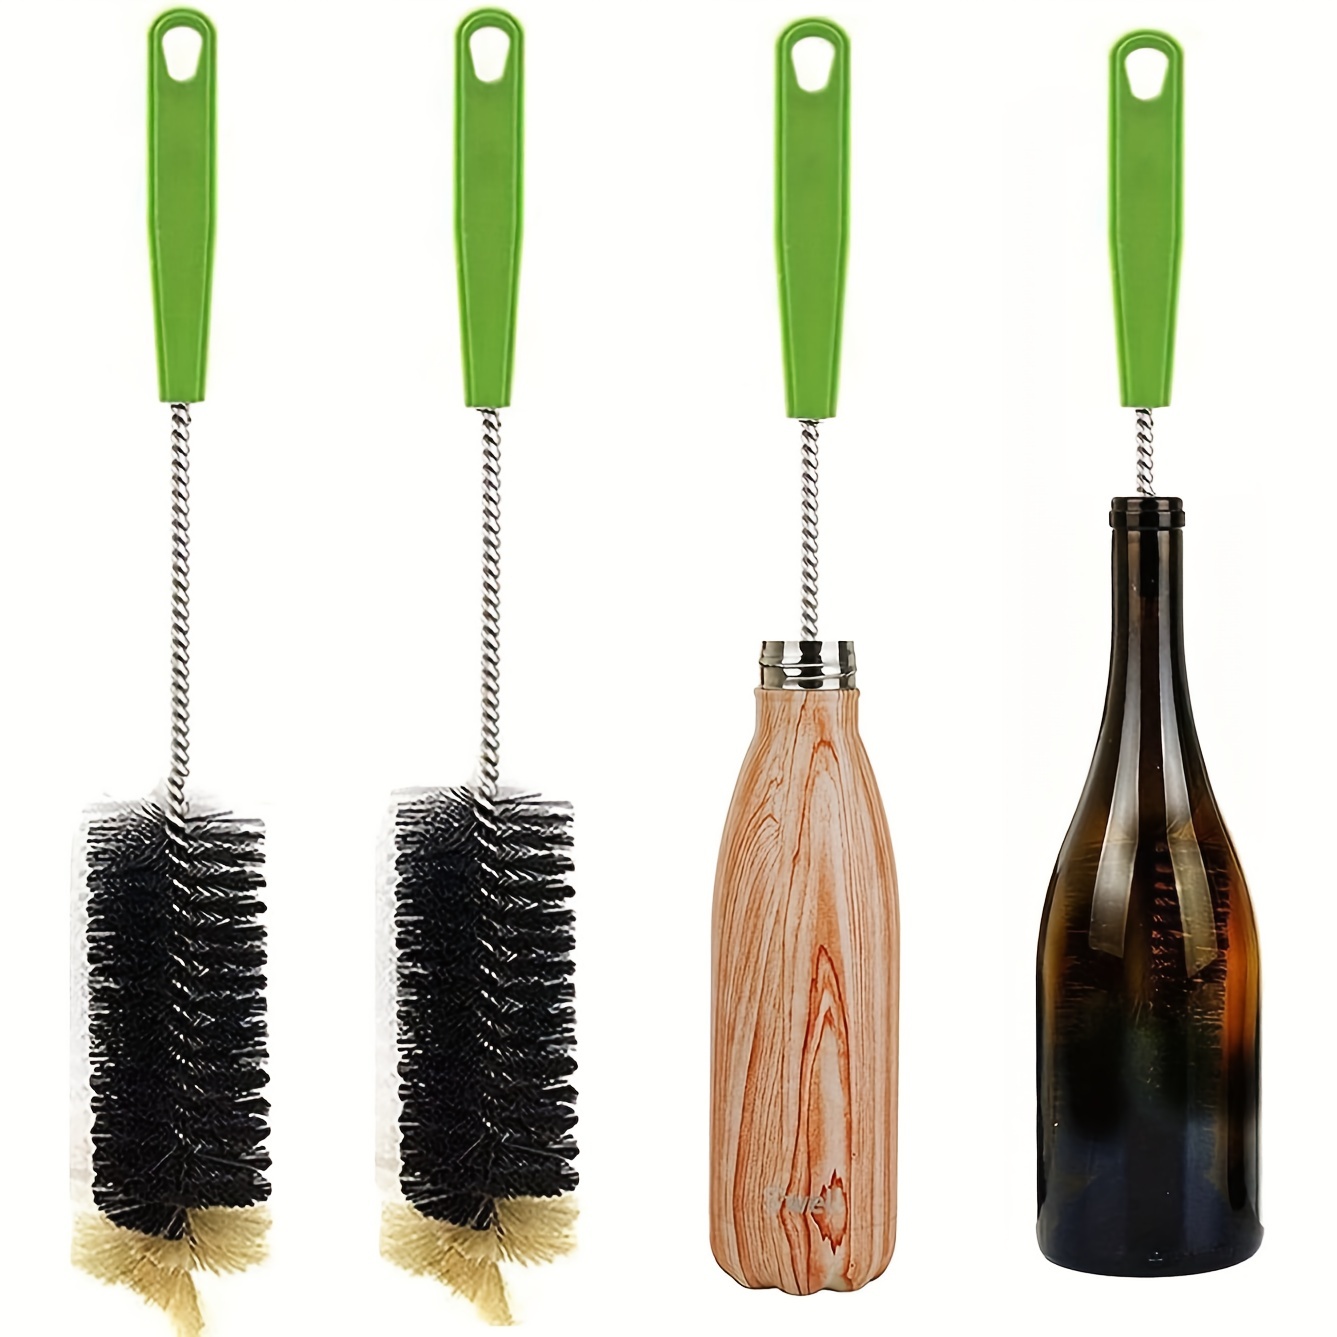 Wooden bottle brush for narrow-necked bottles